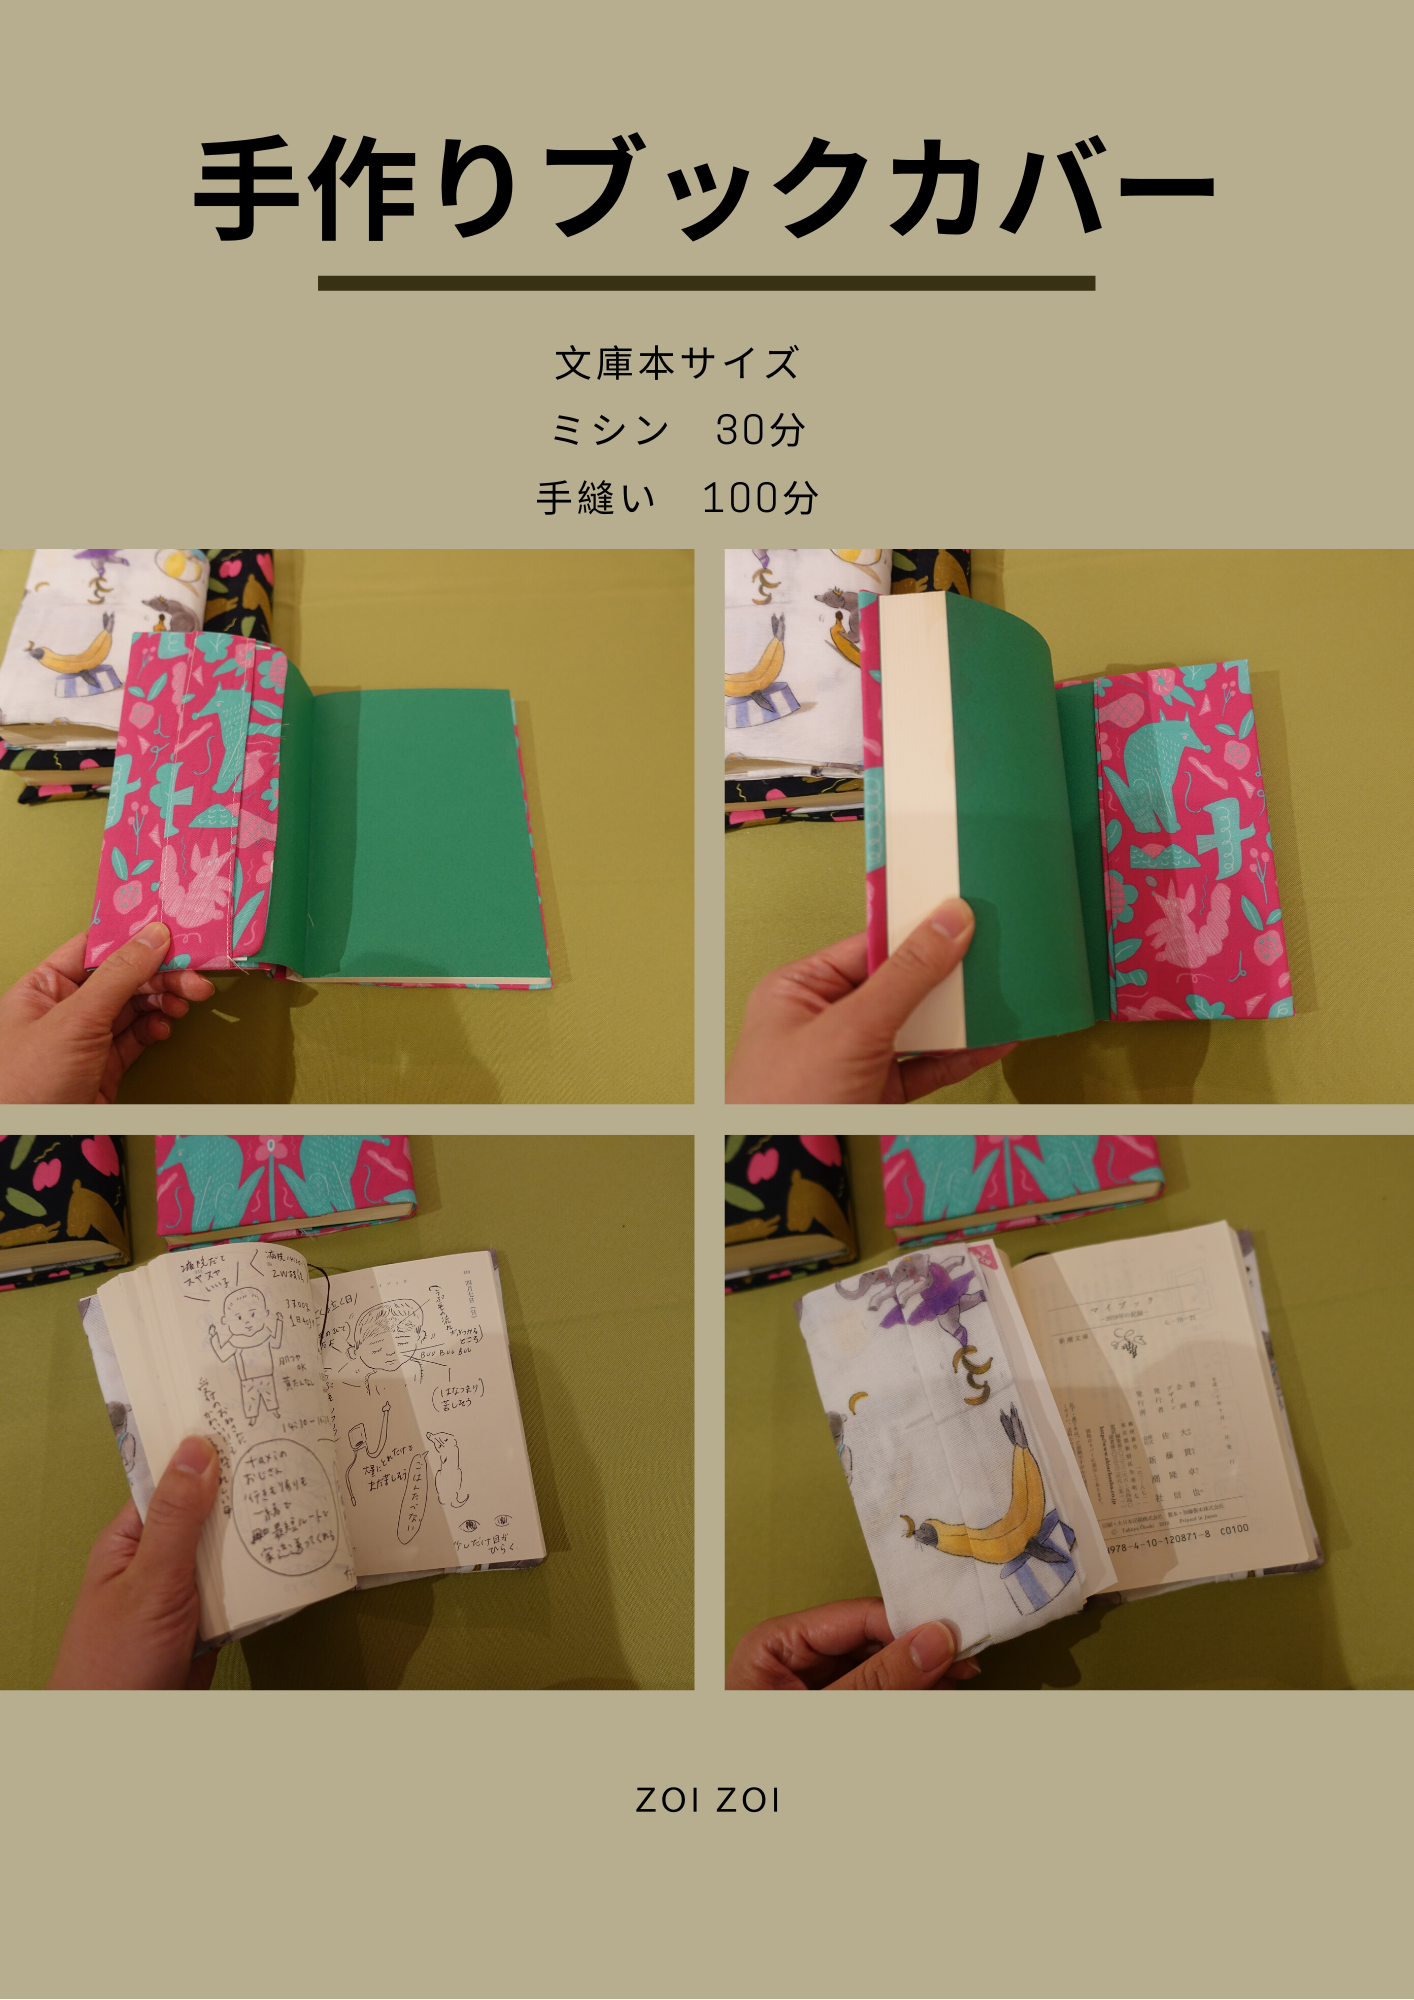 ブックカバー手作りキット 学術書a5サイズ 単行本サイズ 文庫本サイズ 日本製 Zoi オリジナル生地 Zoi Zoi